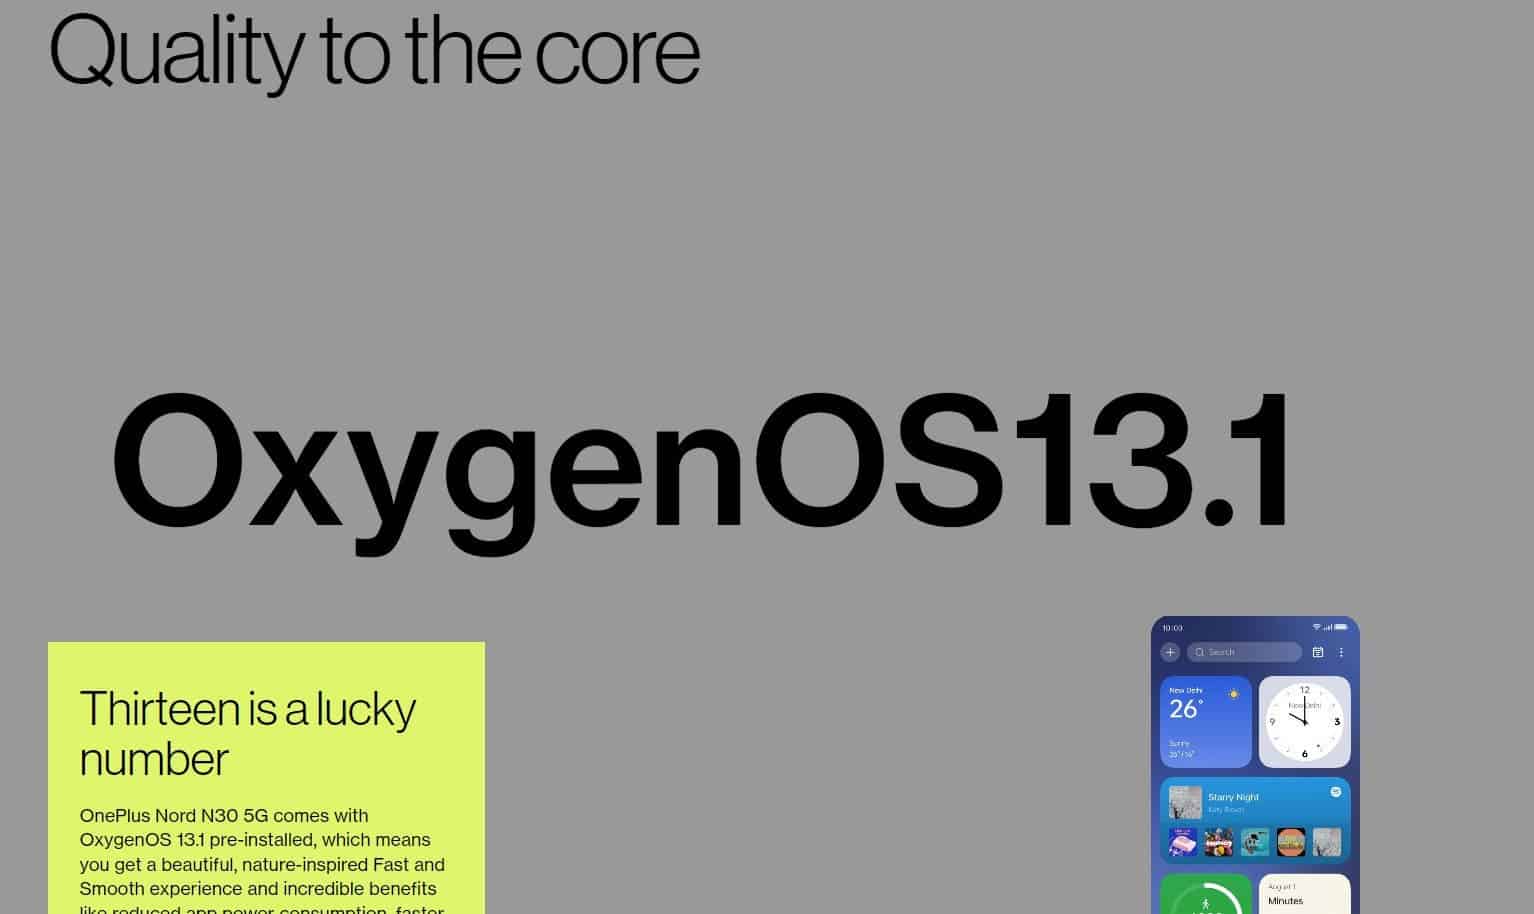 Oxygen OS 13.1